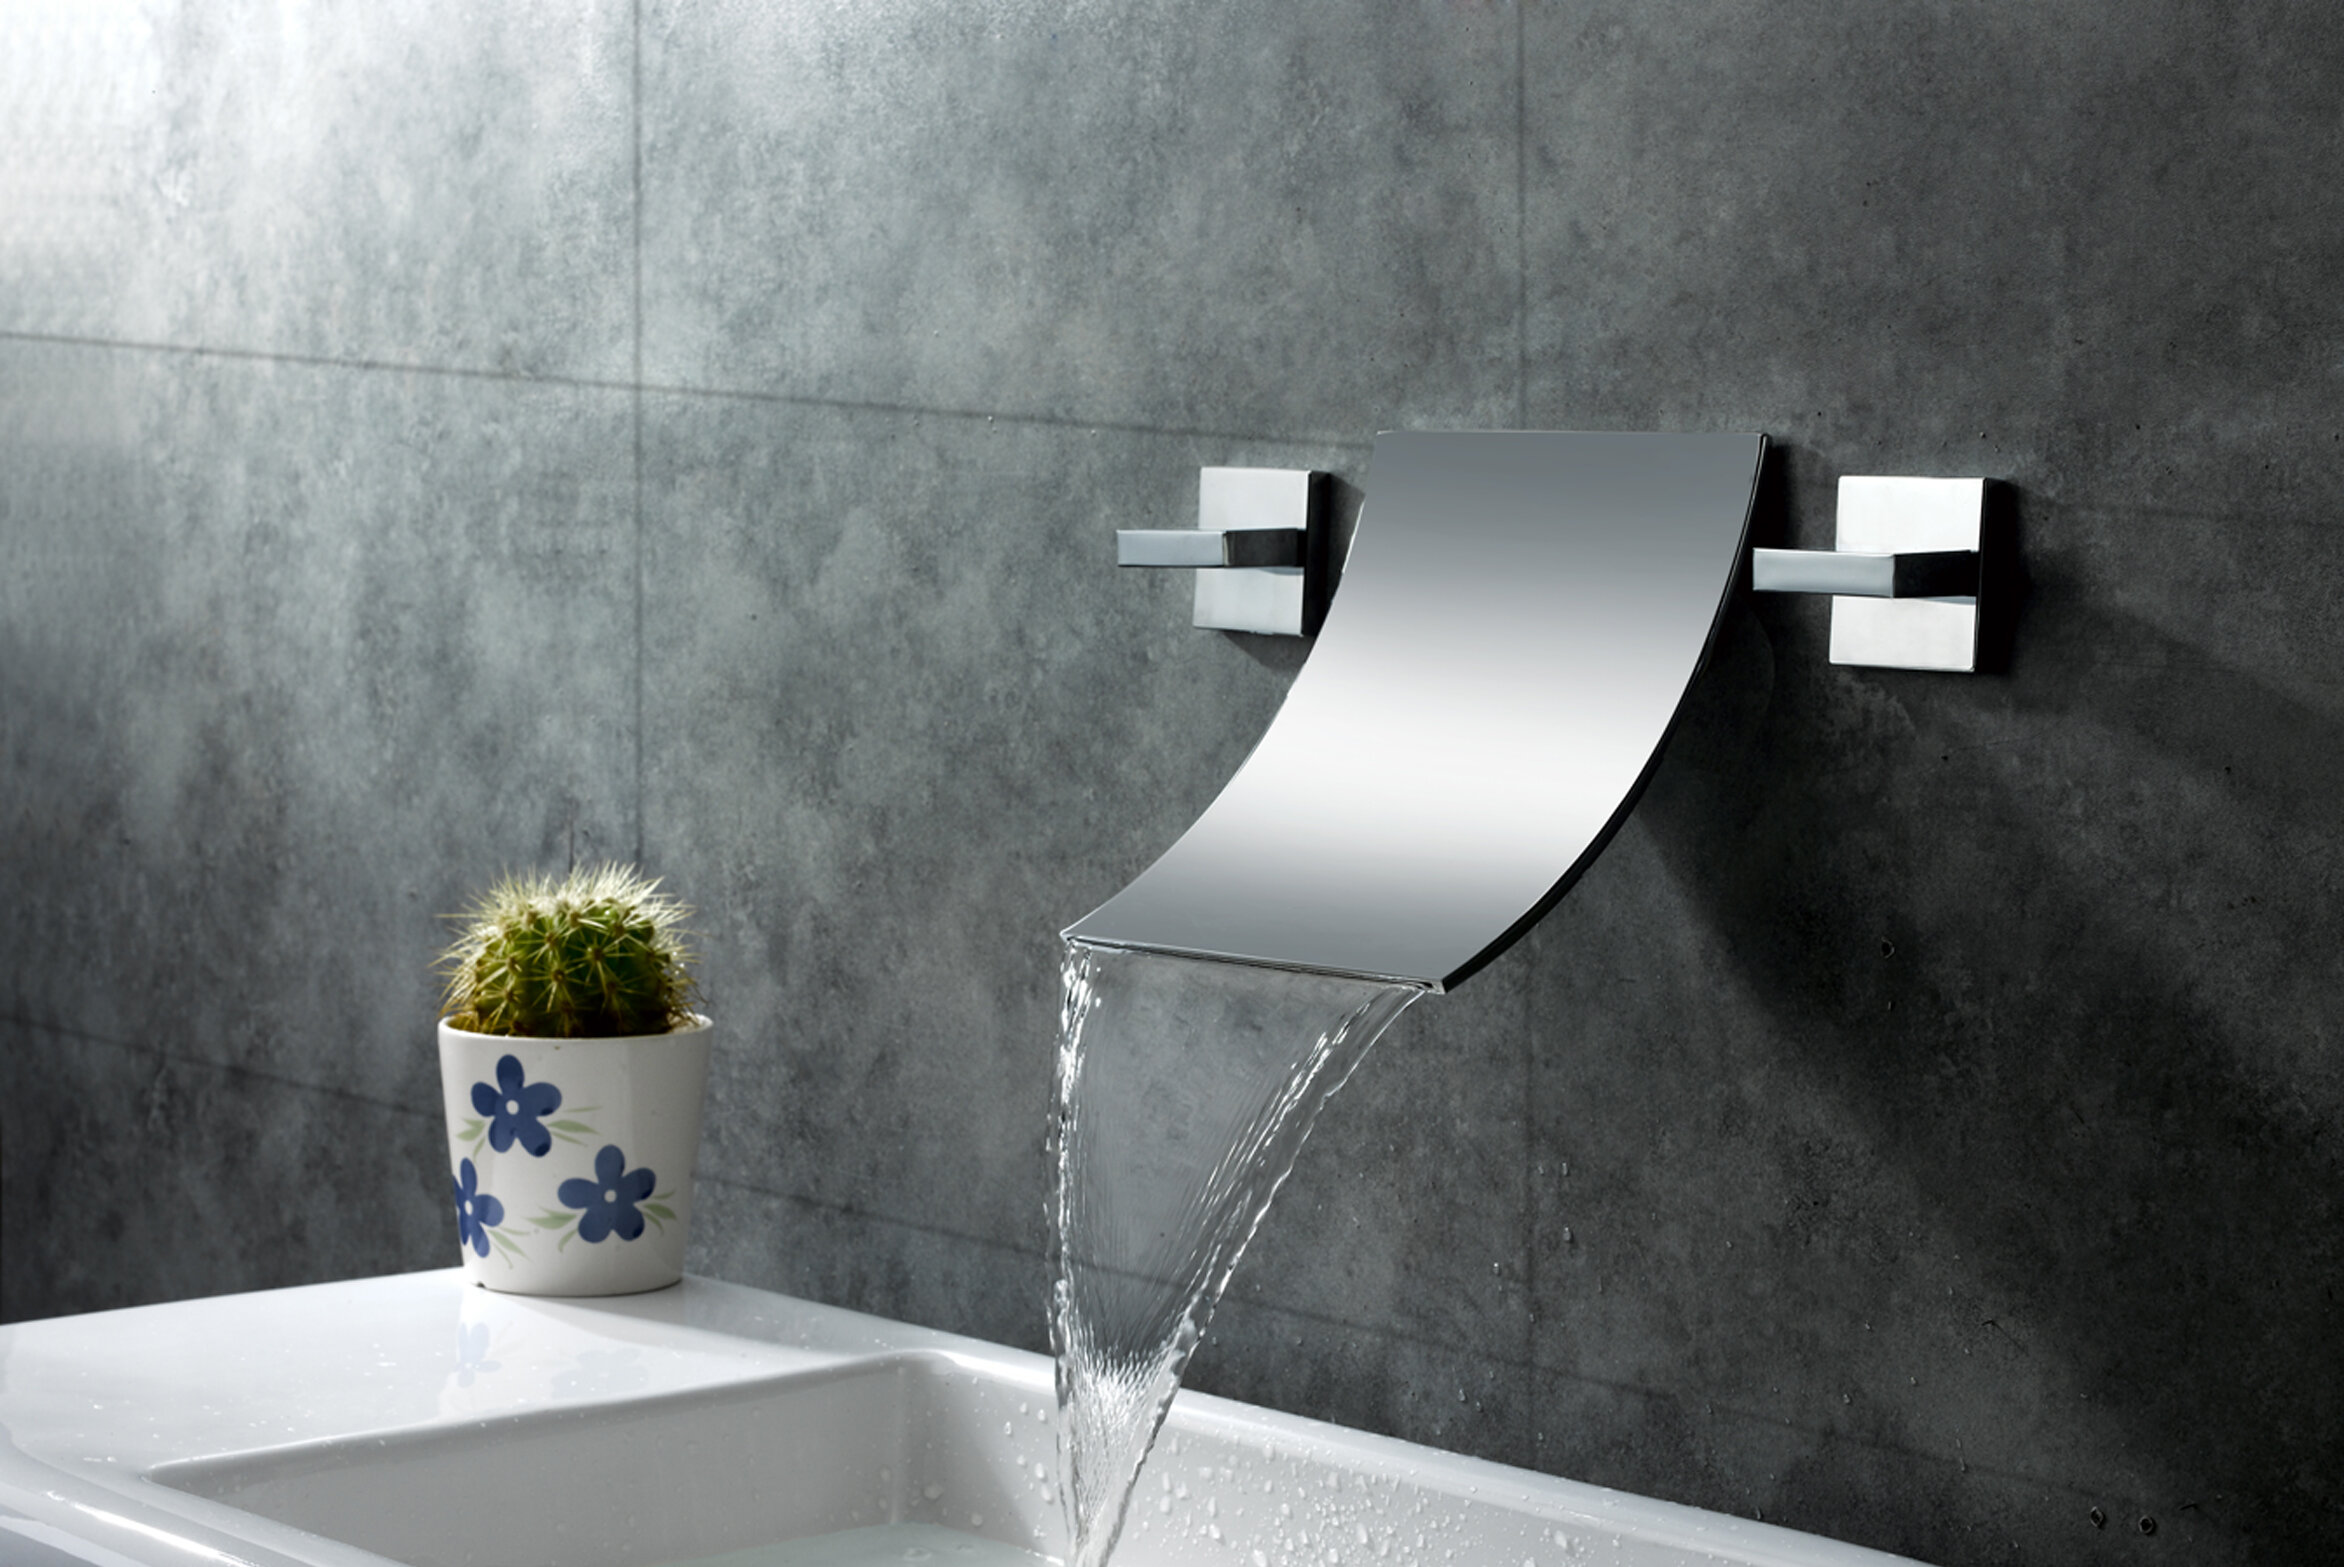 Sumerain Wall Mount Waterfall Bathroom Sink Faucet Reviews Wayfair